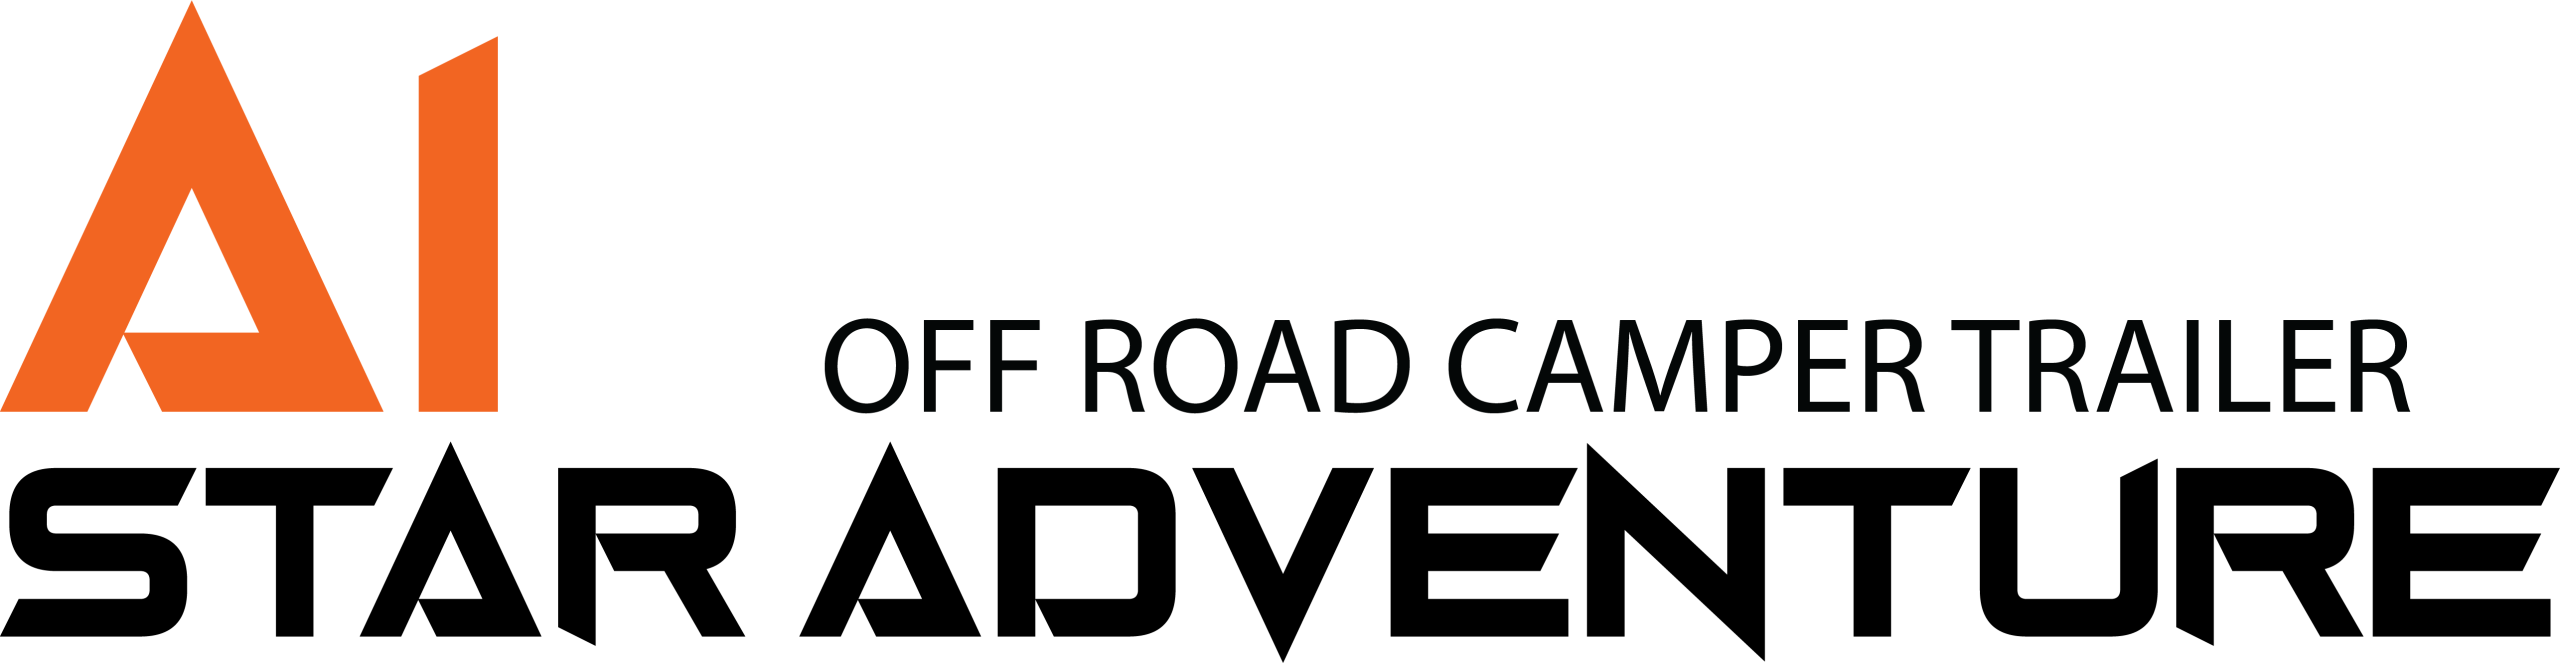 A1 | Off Road Camper Trailer